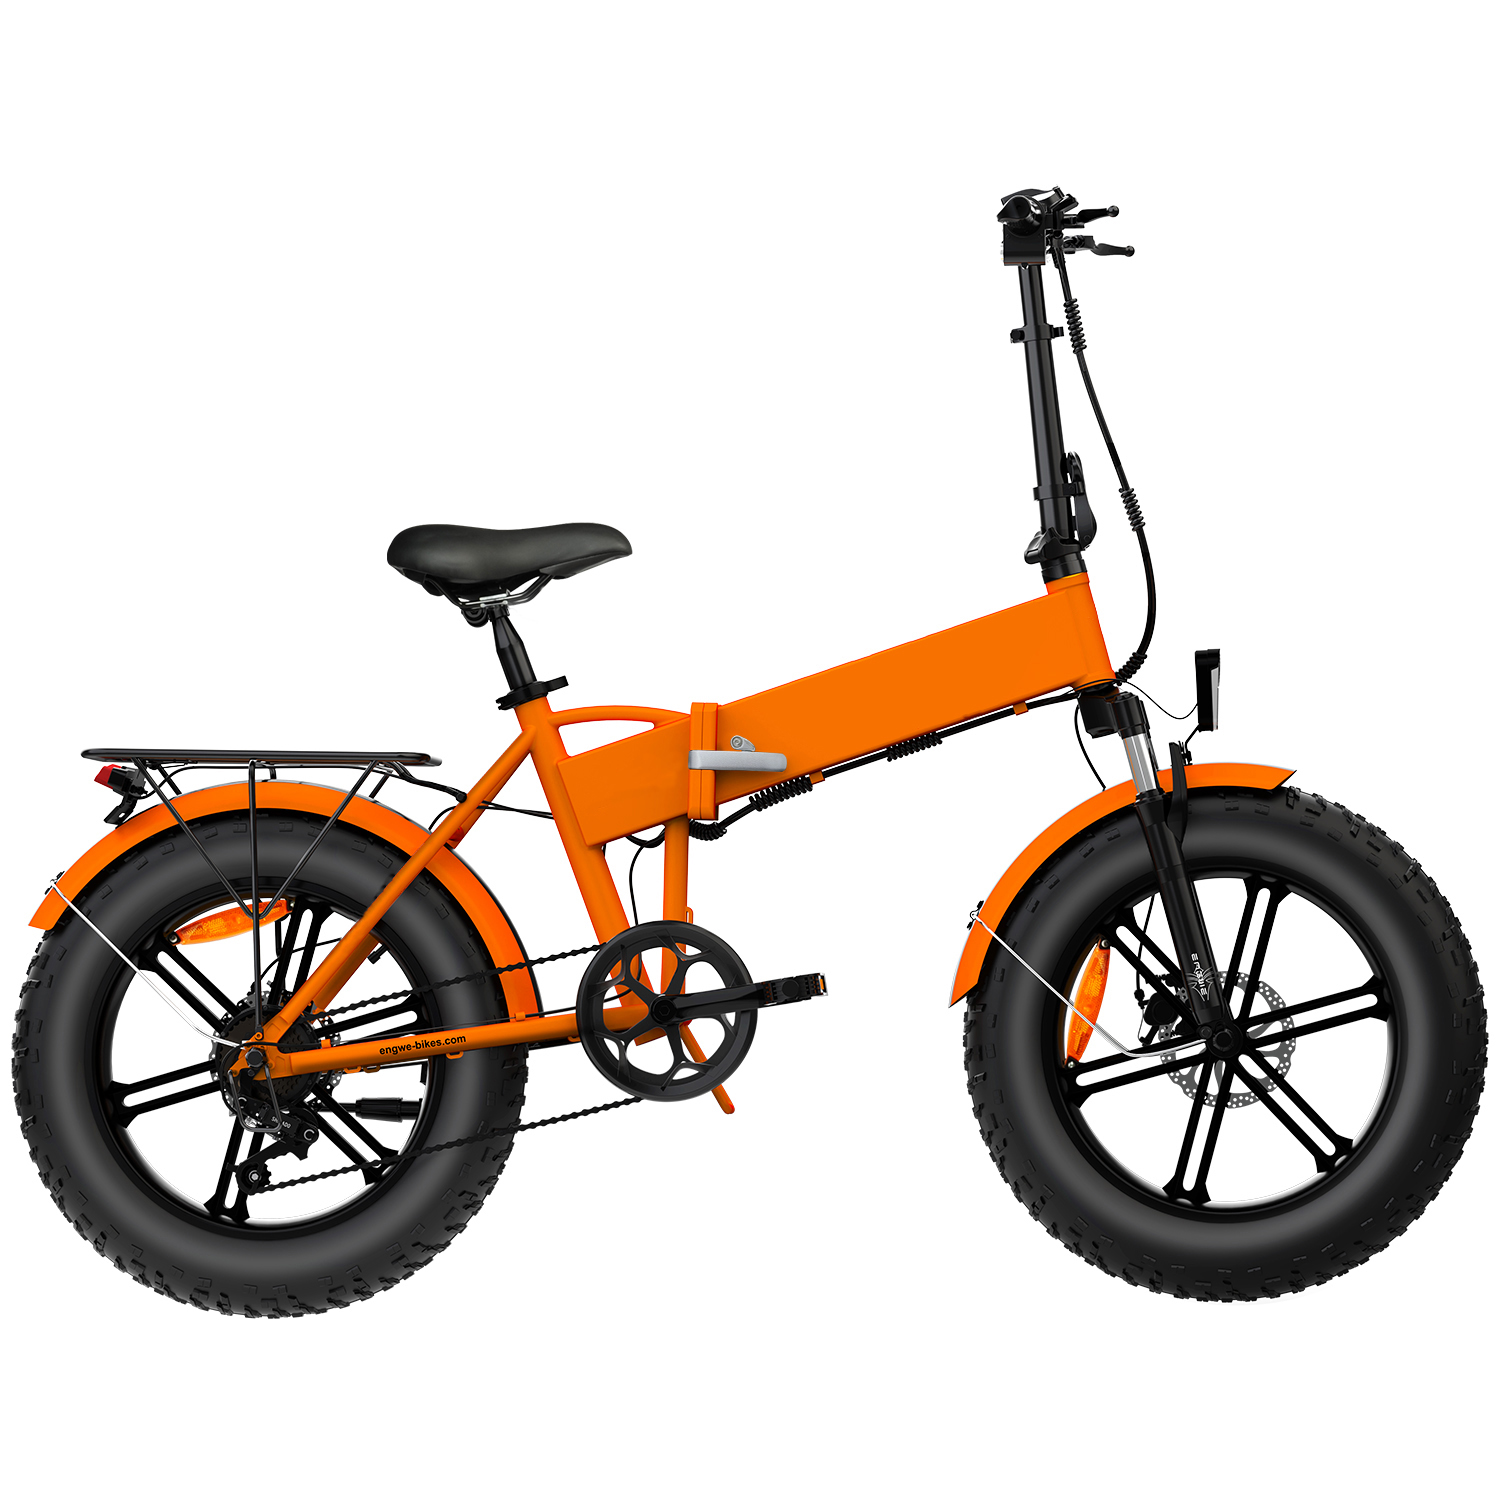 48v LG lithium battery 13ah 750w ebike UK warehouse 20 inch electric quad bike 